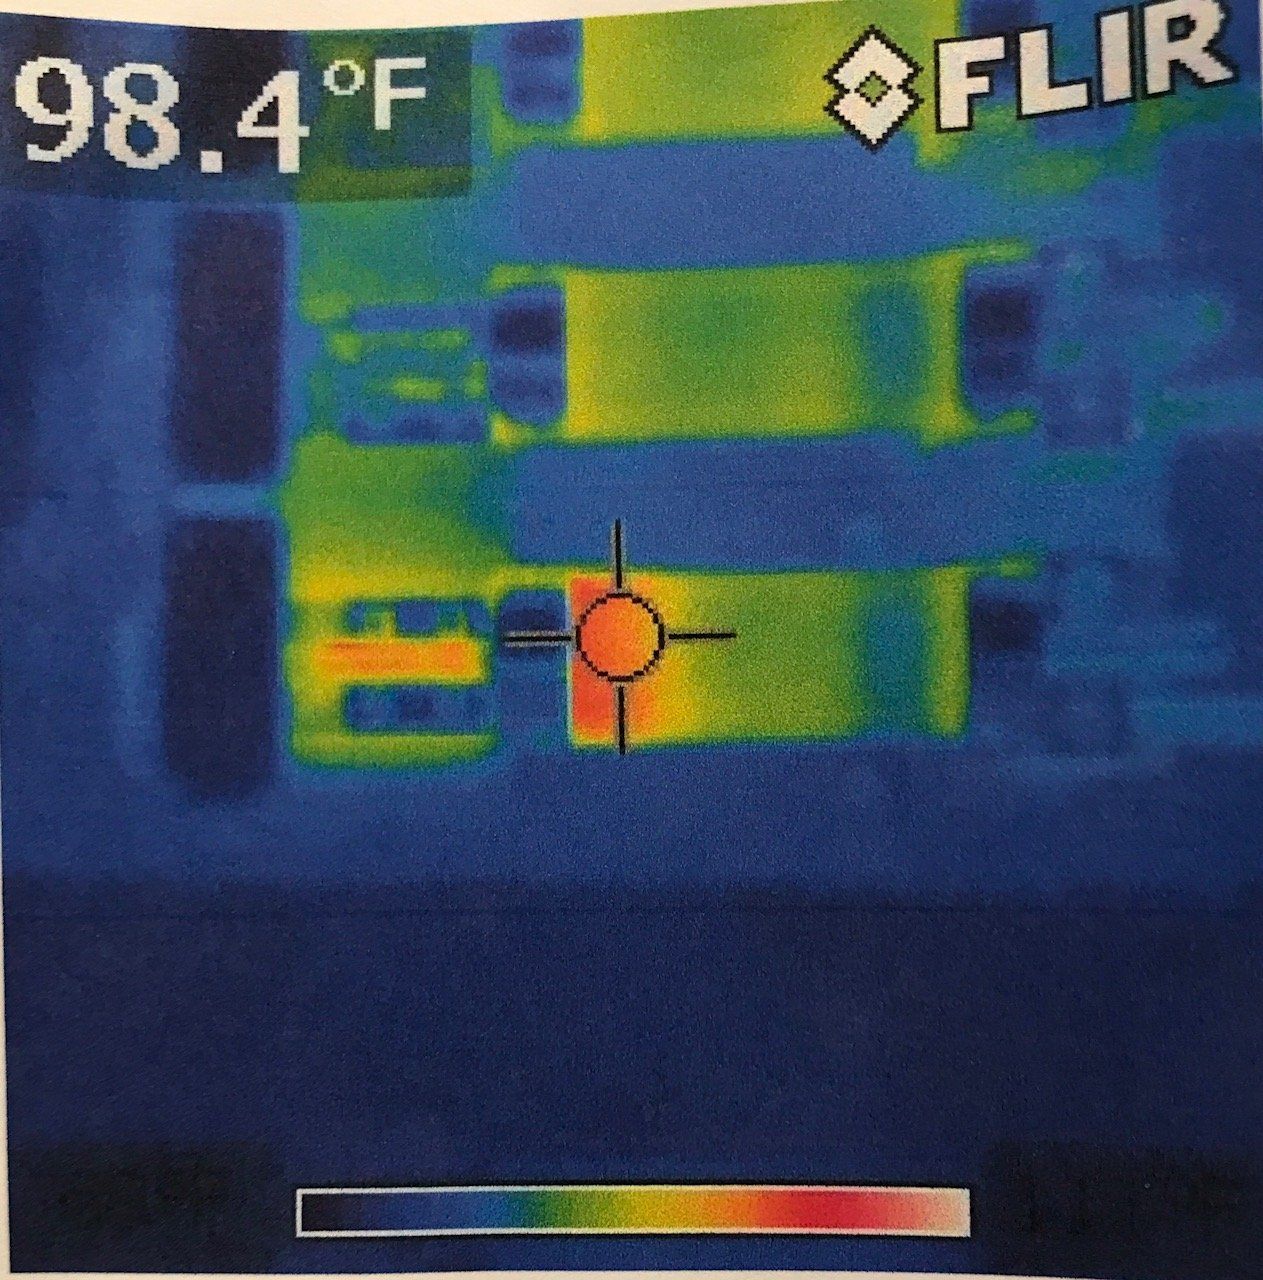 Thermal imaging/preventative maintenance